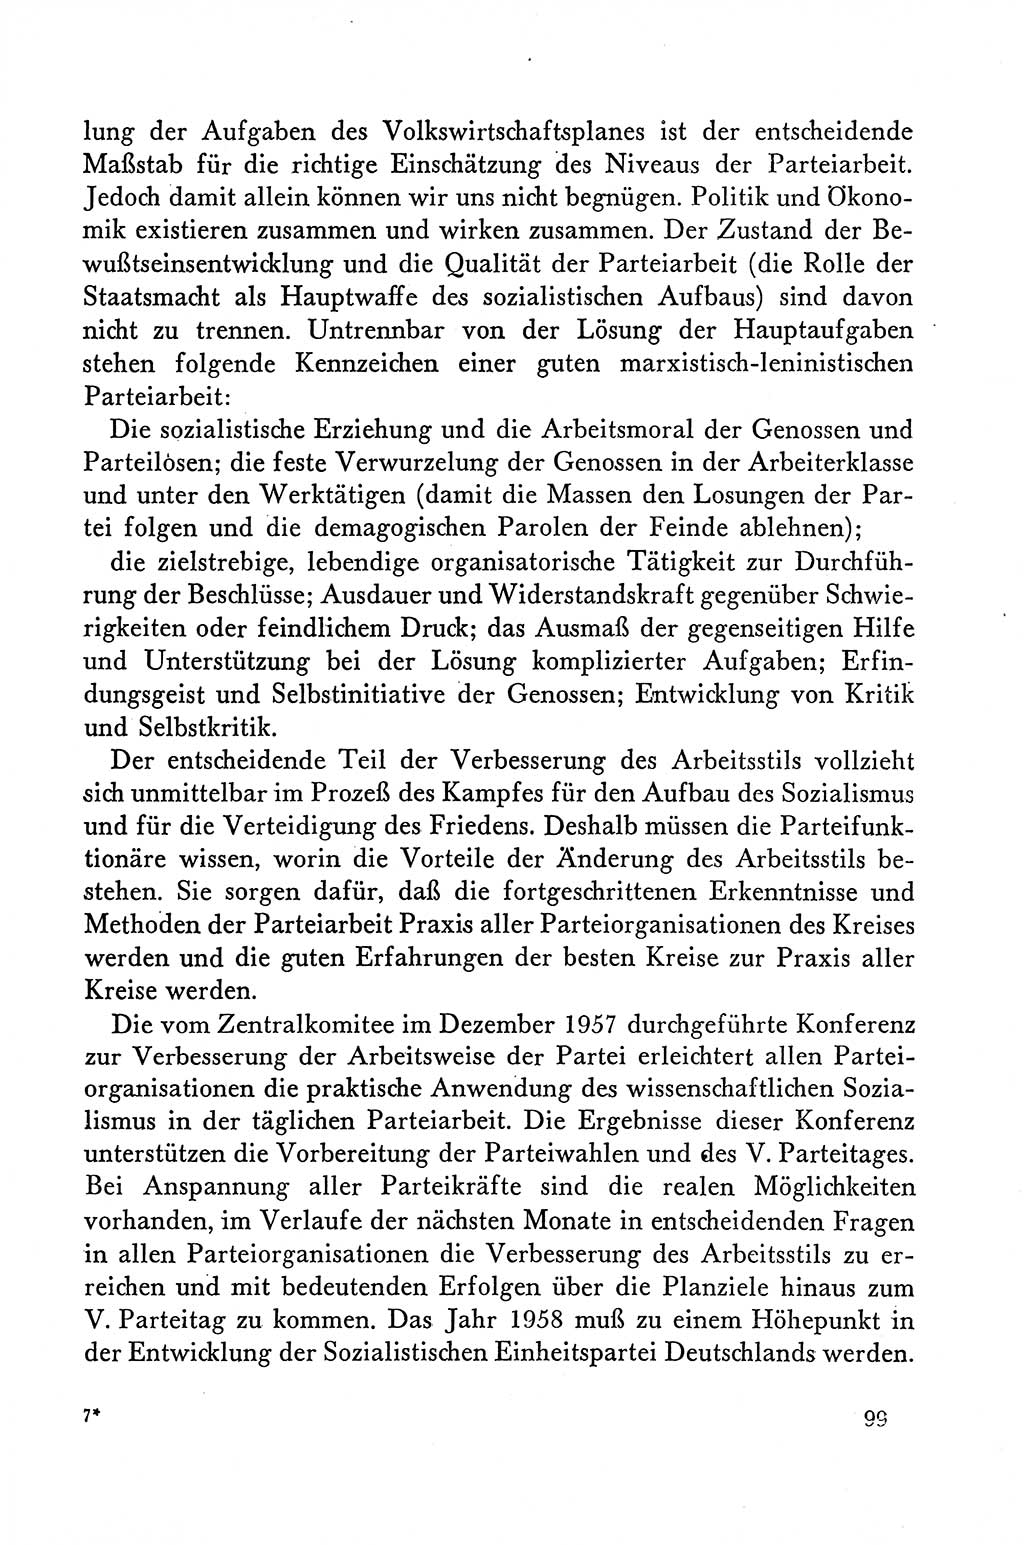 Dokumente der Sozialistischen Einheitspartei Deutschlands (SED) [Deutsche Demokratische Republik (DDR)] 1958-1959, Seite 99 (Dok. SED DDR 1958-1959, S. 99)